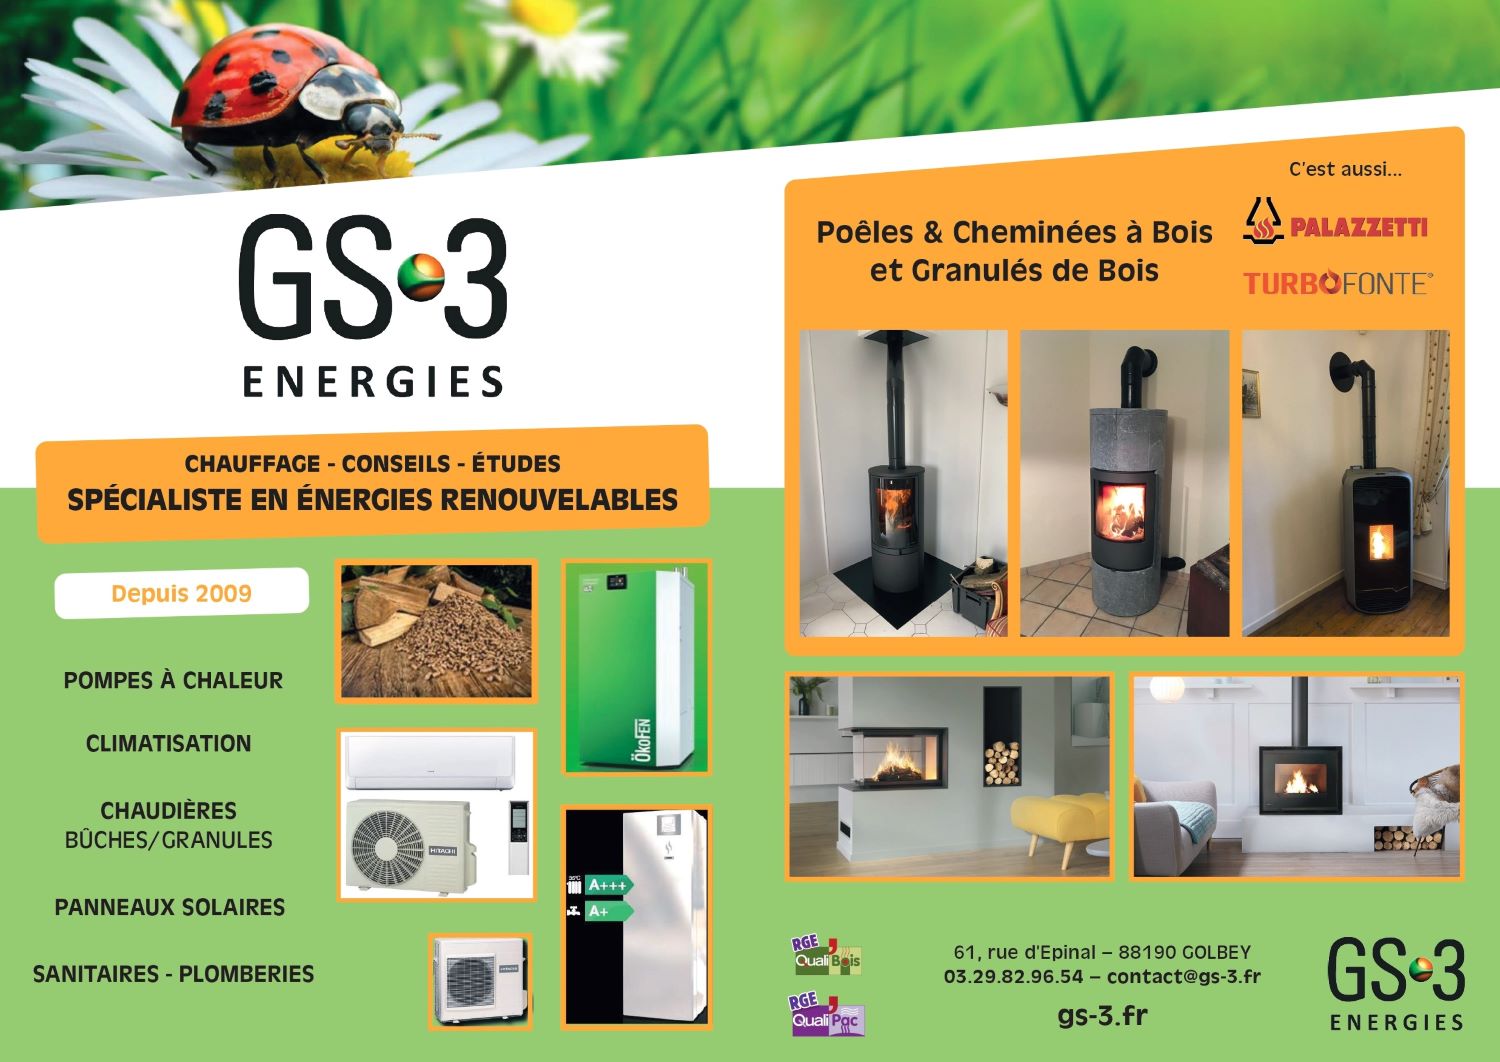 GS3 ENERGIES